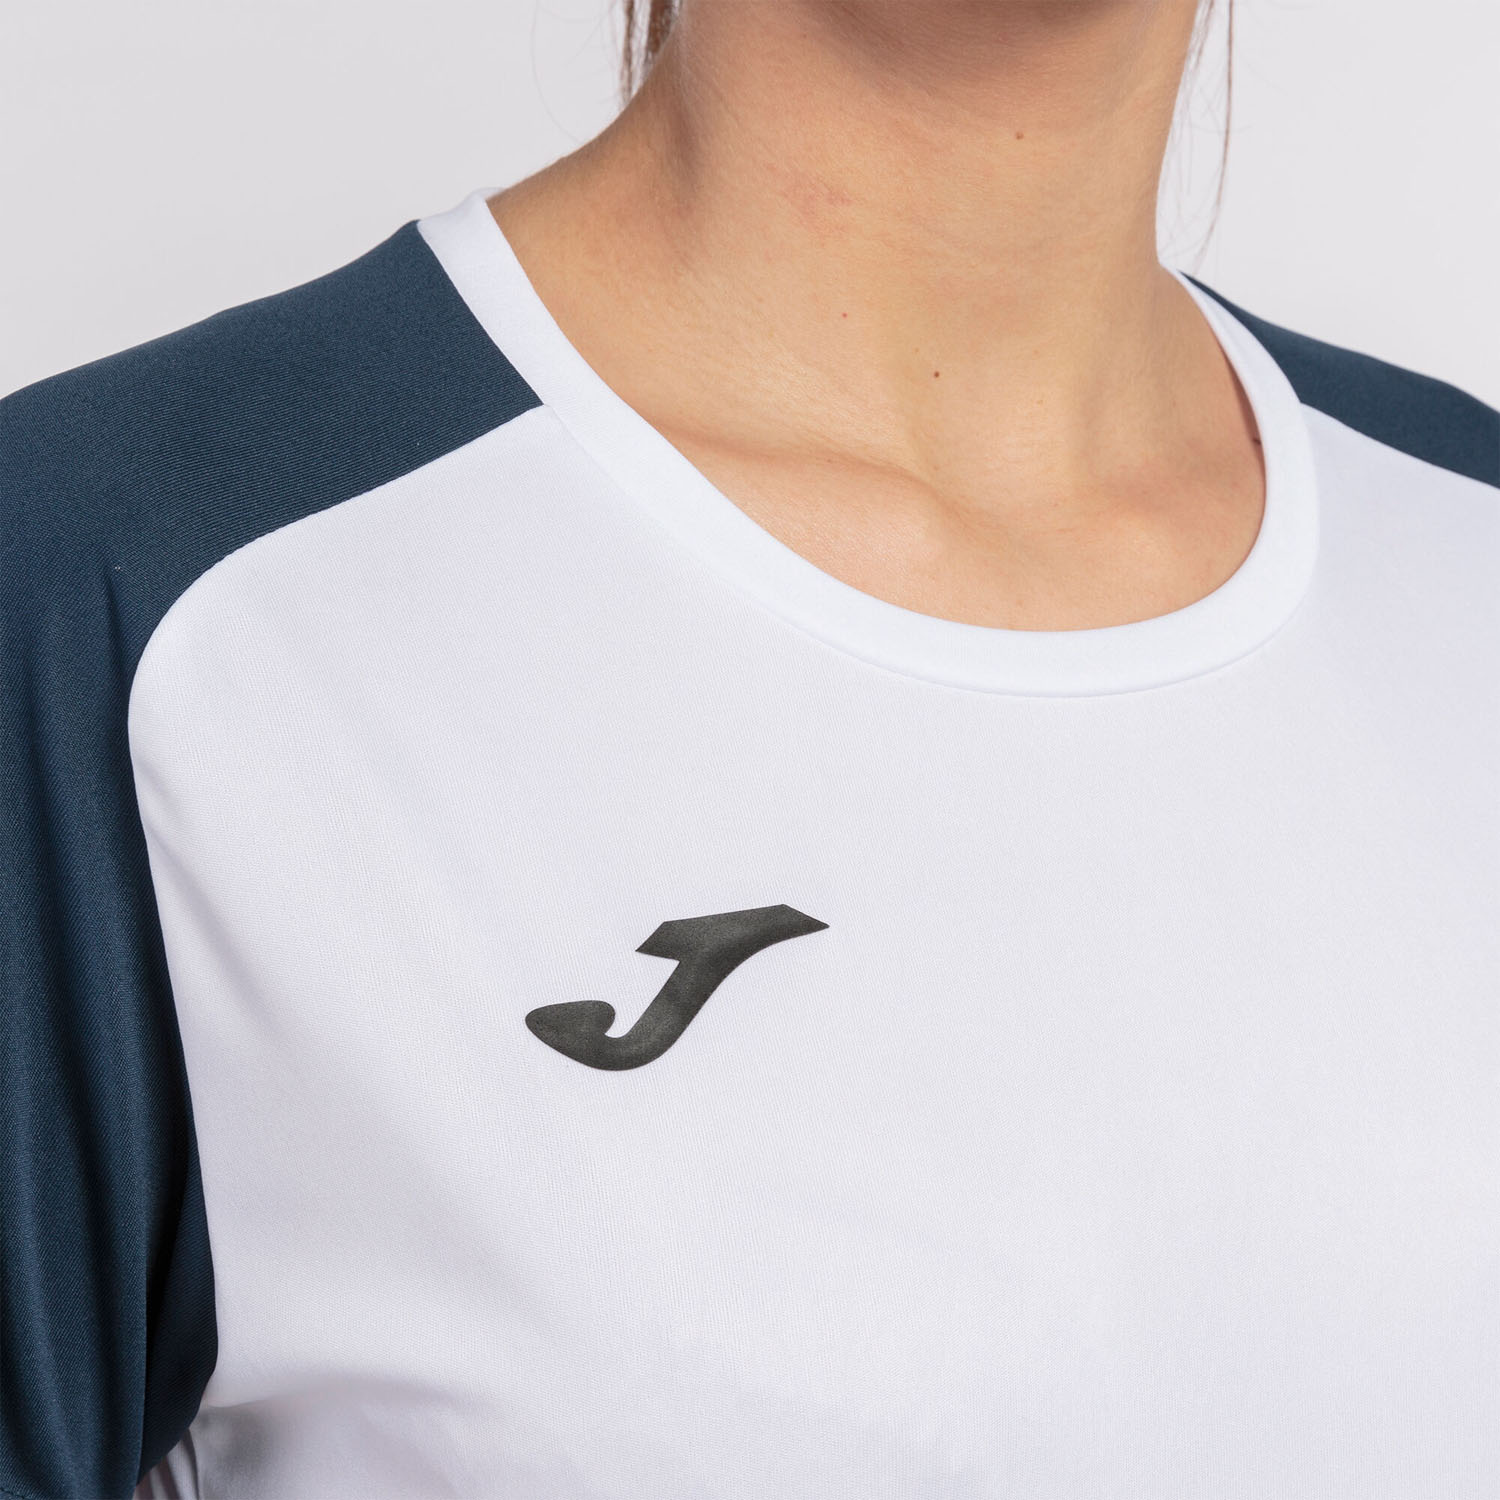 Joma Academy IV Camiseta - White/Navy